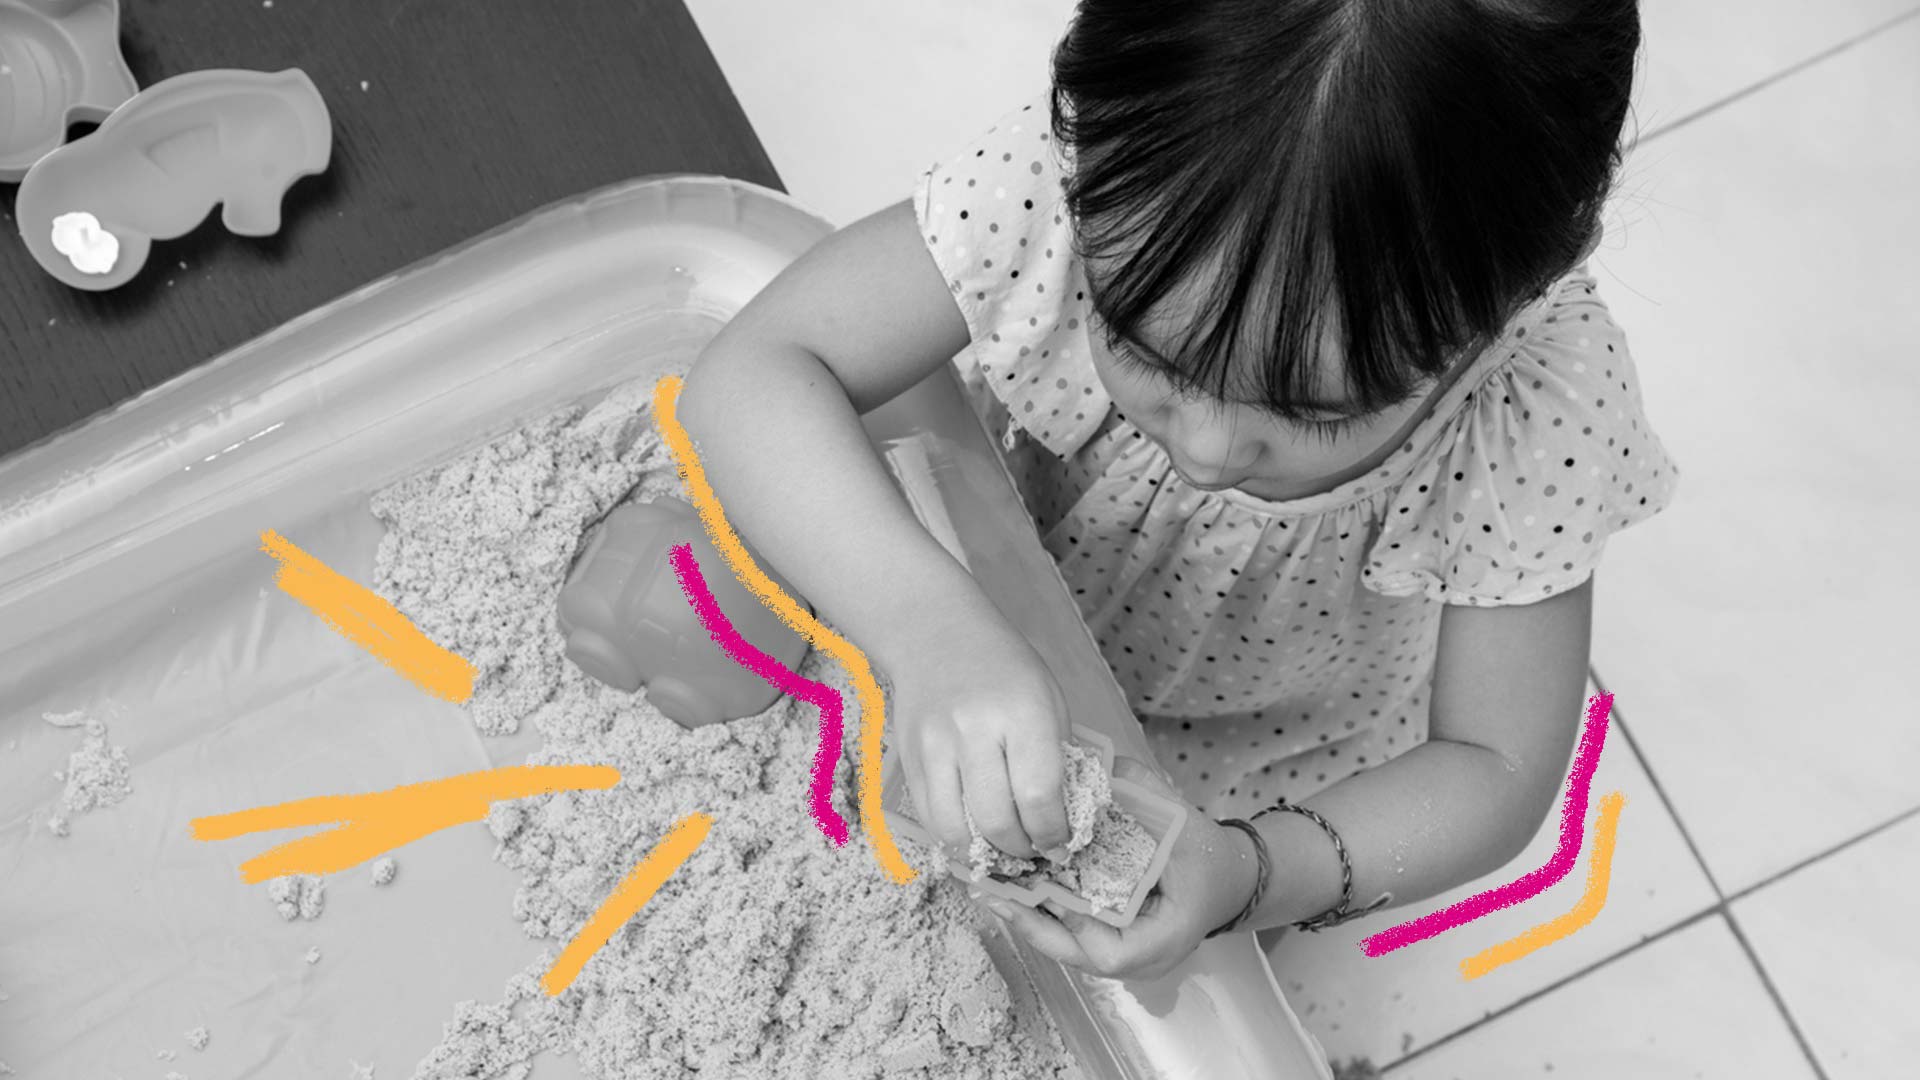 Areia caseira: foto preto e branco de uma criança, que está brincando com uma caixa de areia. Há rabiscos em rosa e laranja na imagem.